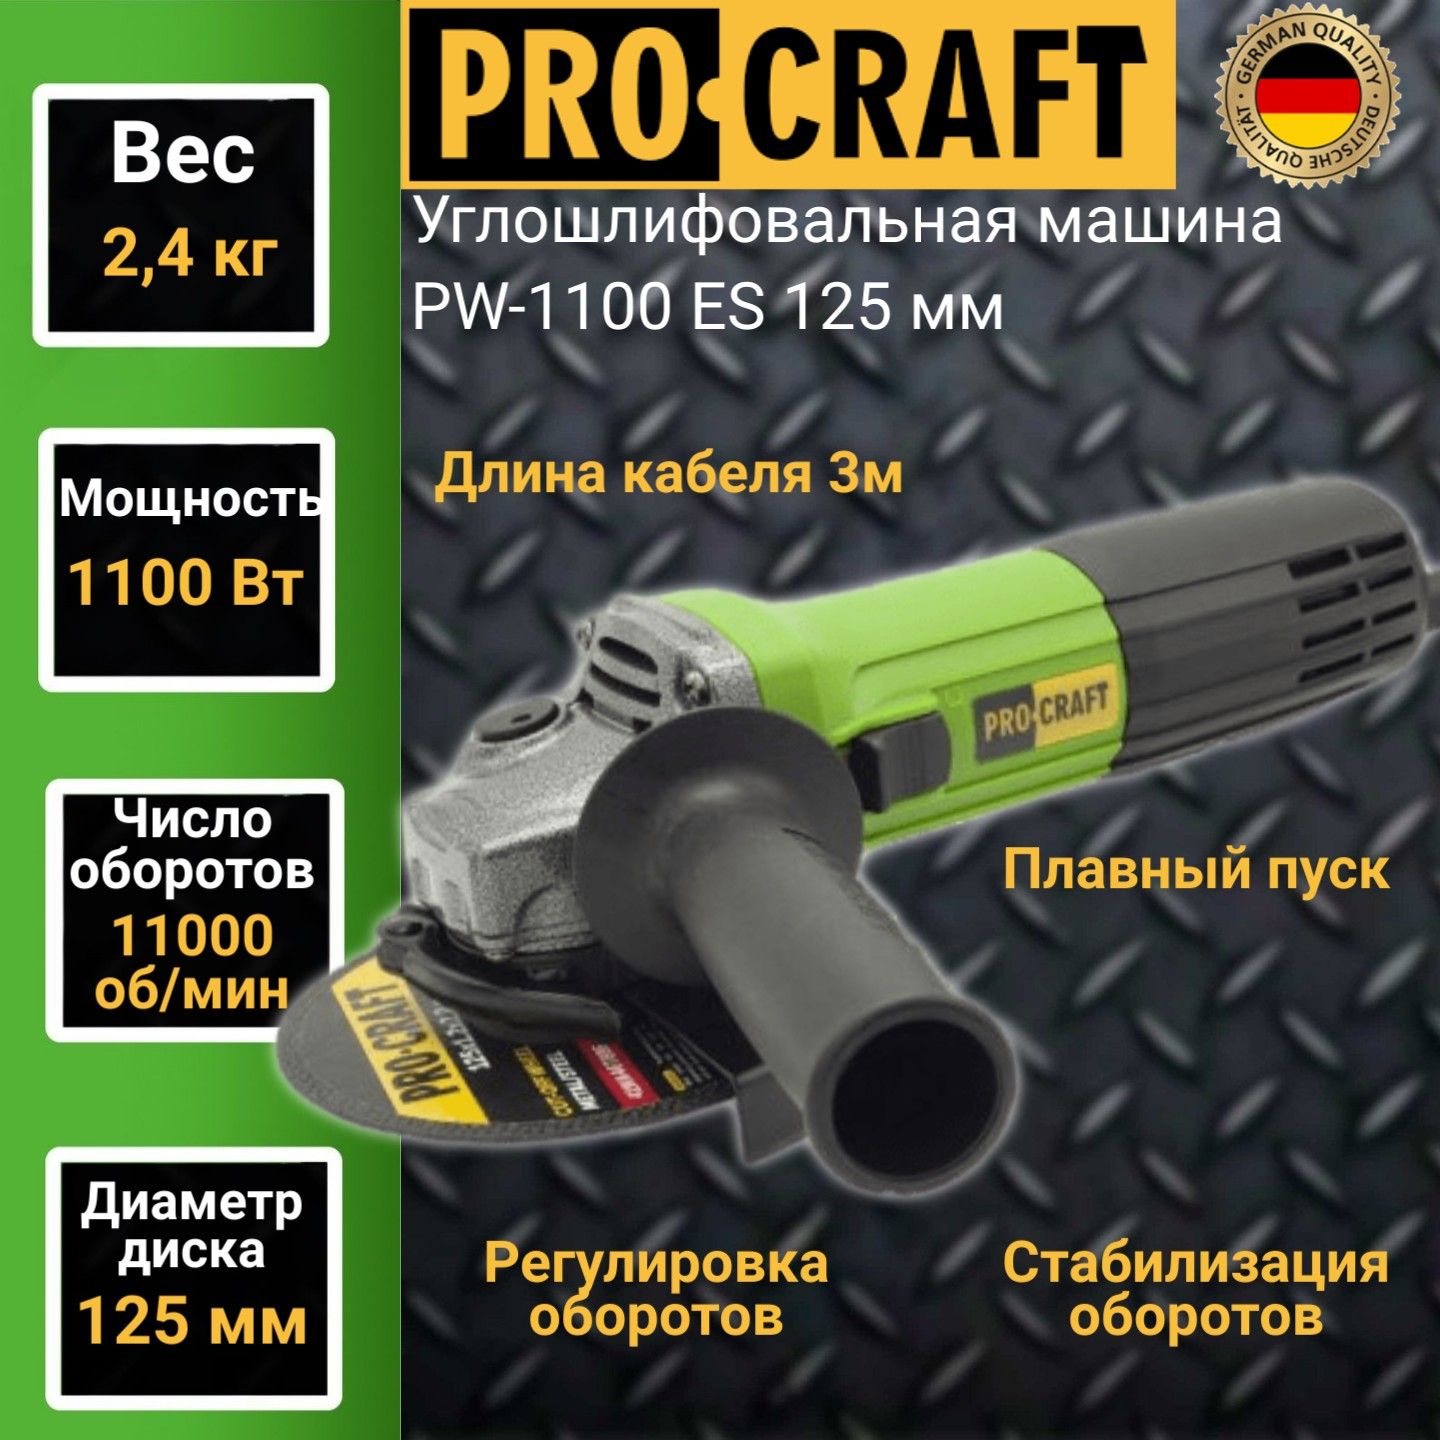 Углошлифовальная машина болгарка Procraft PW-1100ES, 125мм круг, 1100Вт, 11000об/мин - купить в ProCraft Official, цена на Мегамаркет